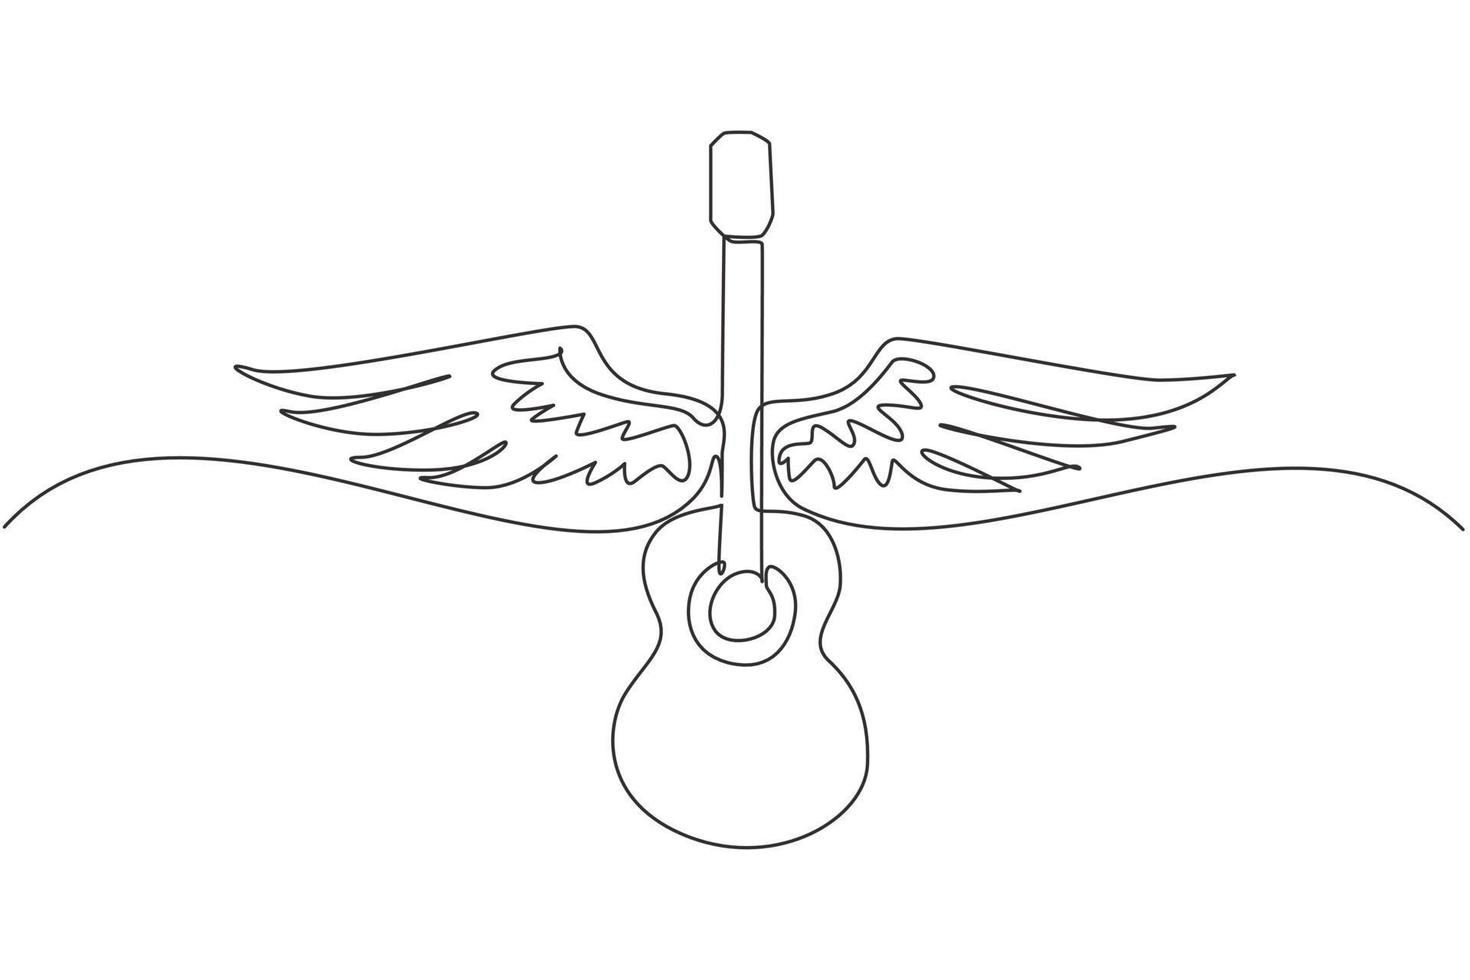 emblema musical de dibujo continuo de una línea con alas, fuego y música de guitarra de subtítulos. instrumento musical. concierto de rock. guitarra acústica con alas. ilustración gráfica de vector de diseño de dibujo de una sola línea